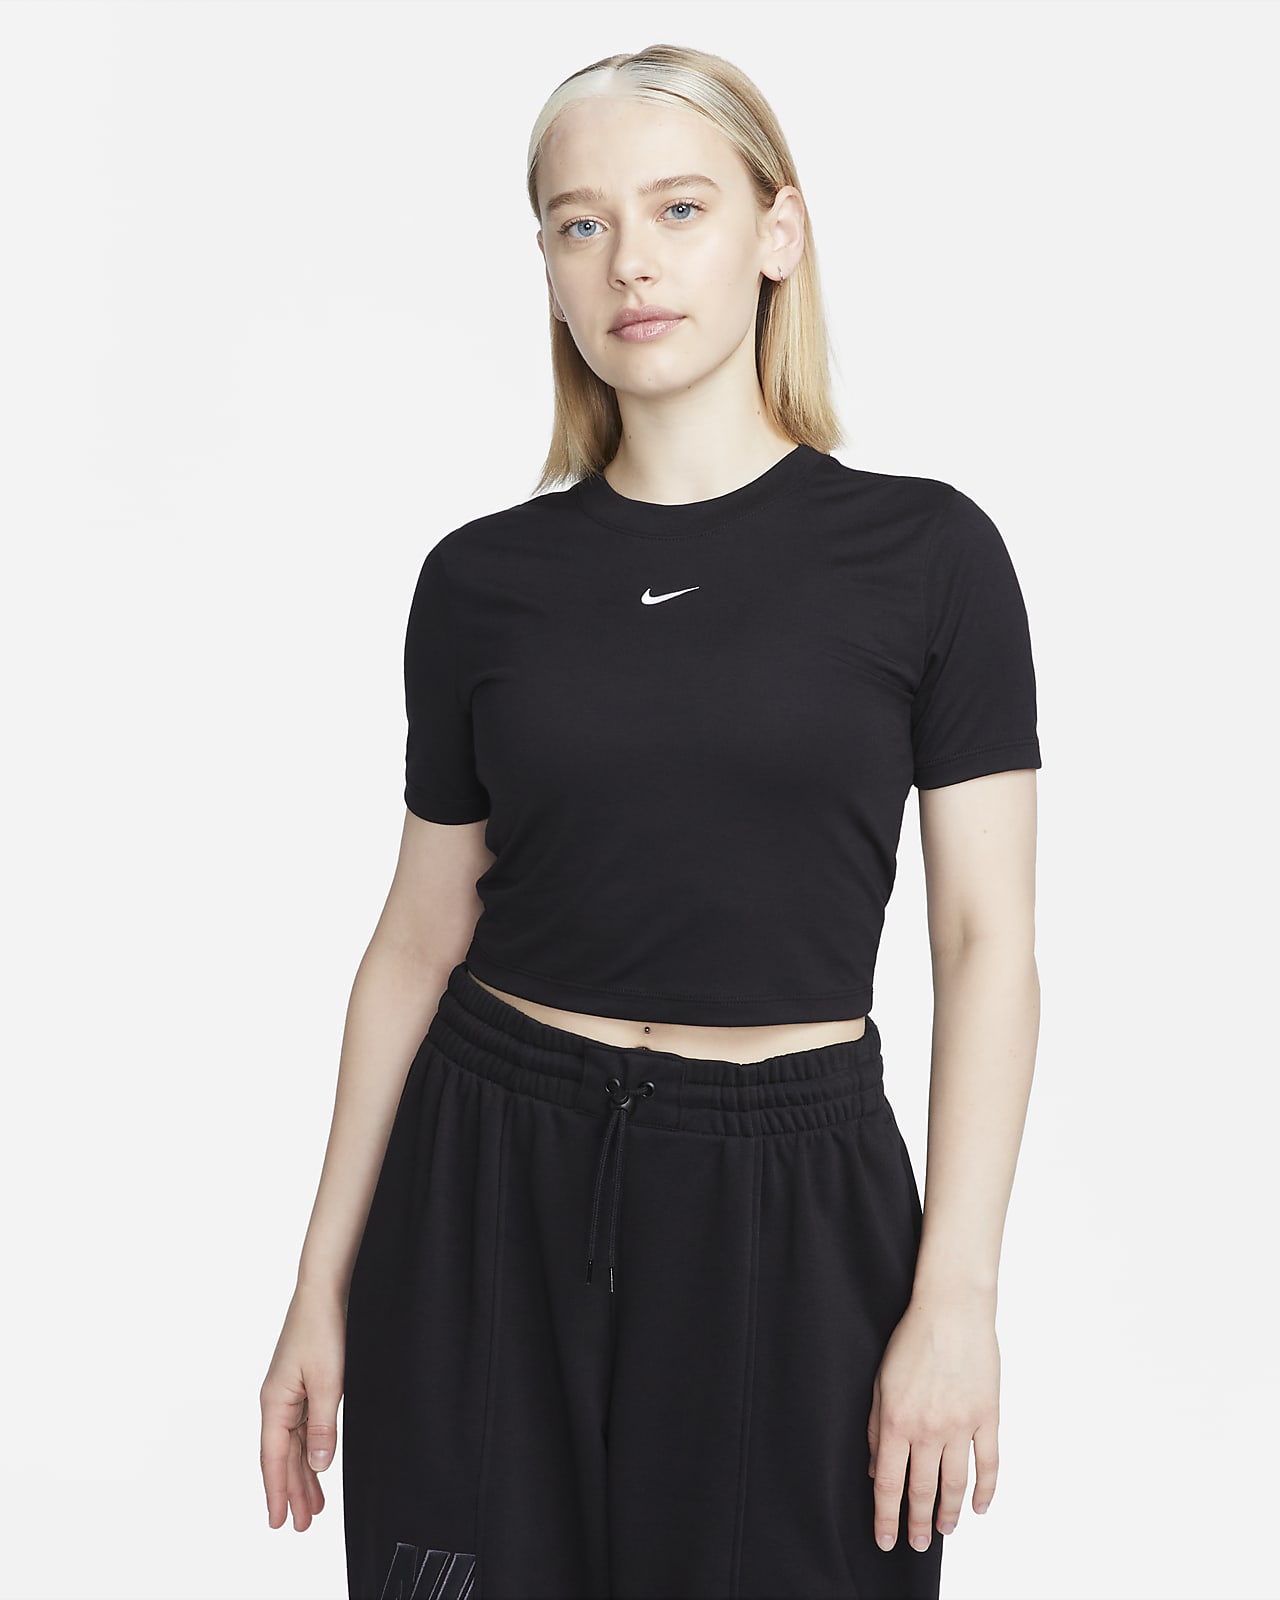 Leche Meloso legación Nike Sportswear Essential Camiseta corta de ajuste entallado - Mujer. Nike  ES